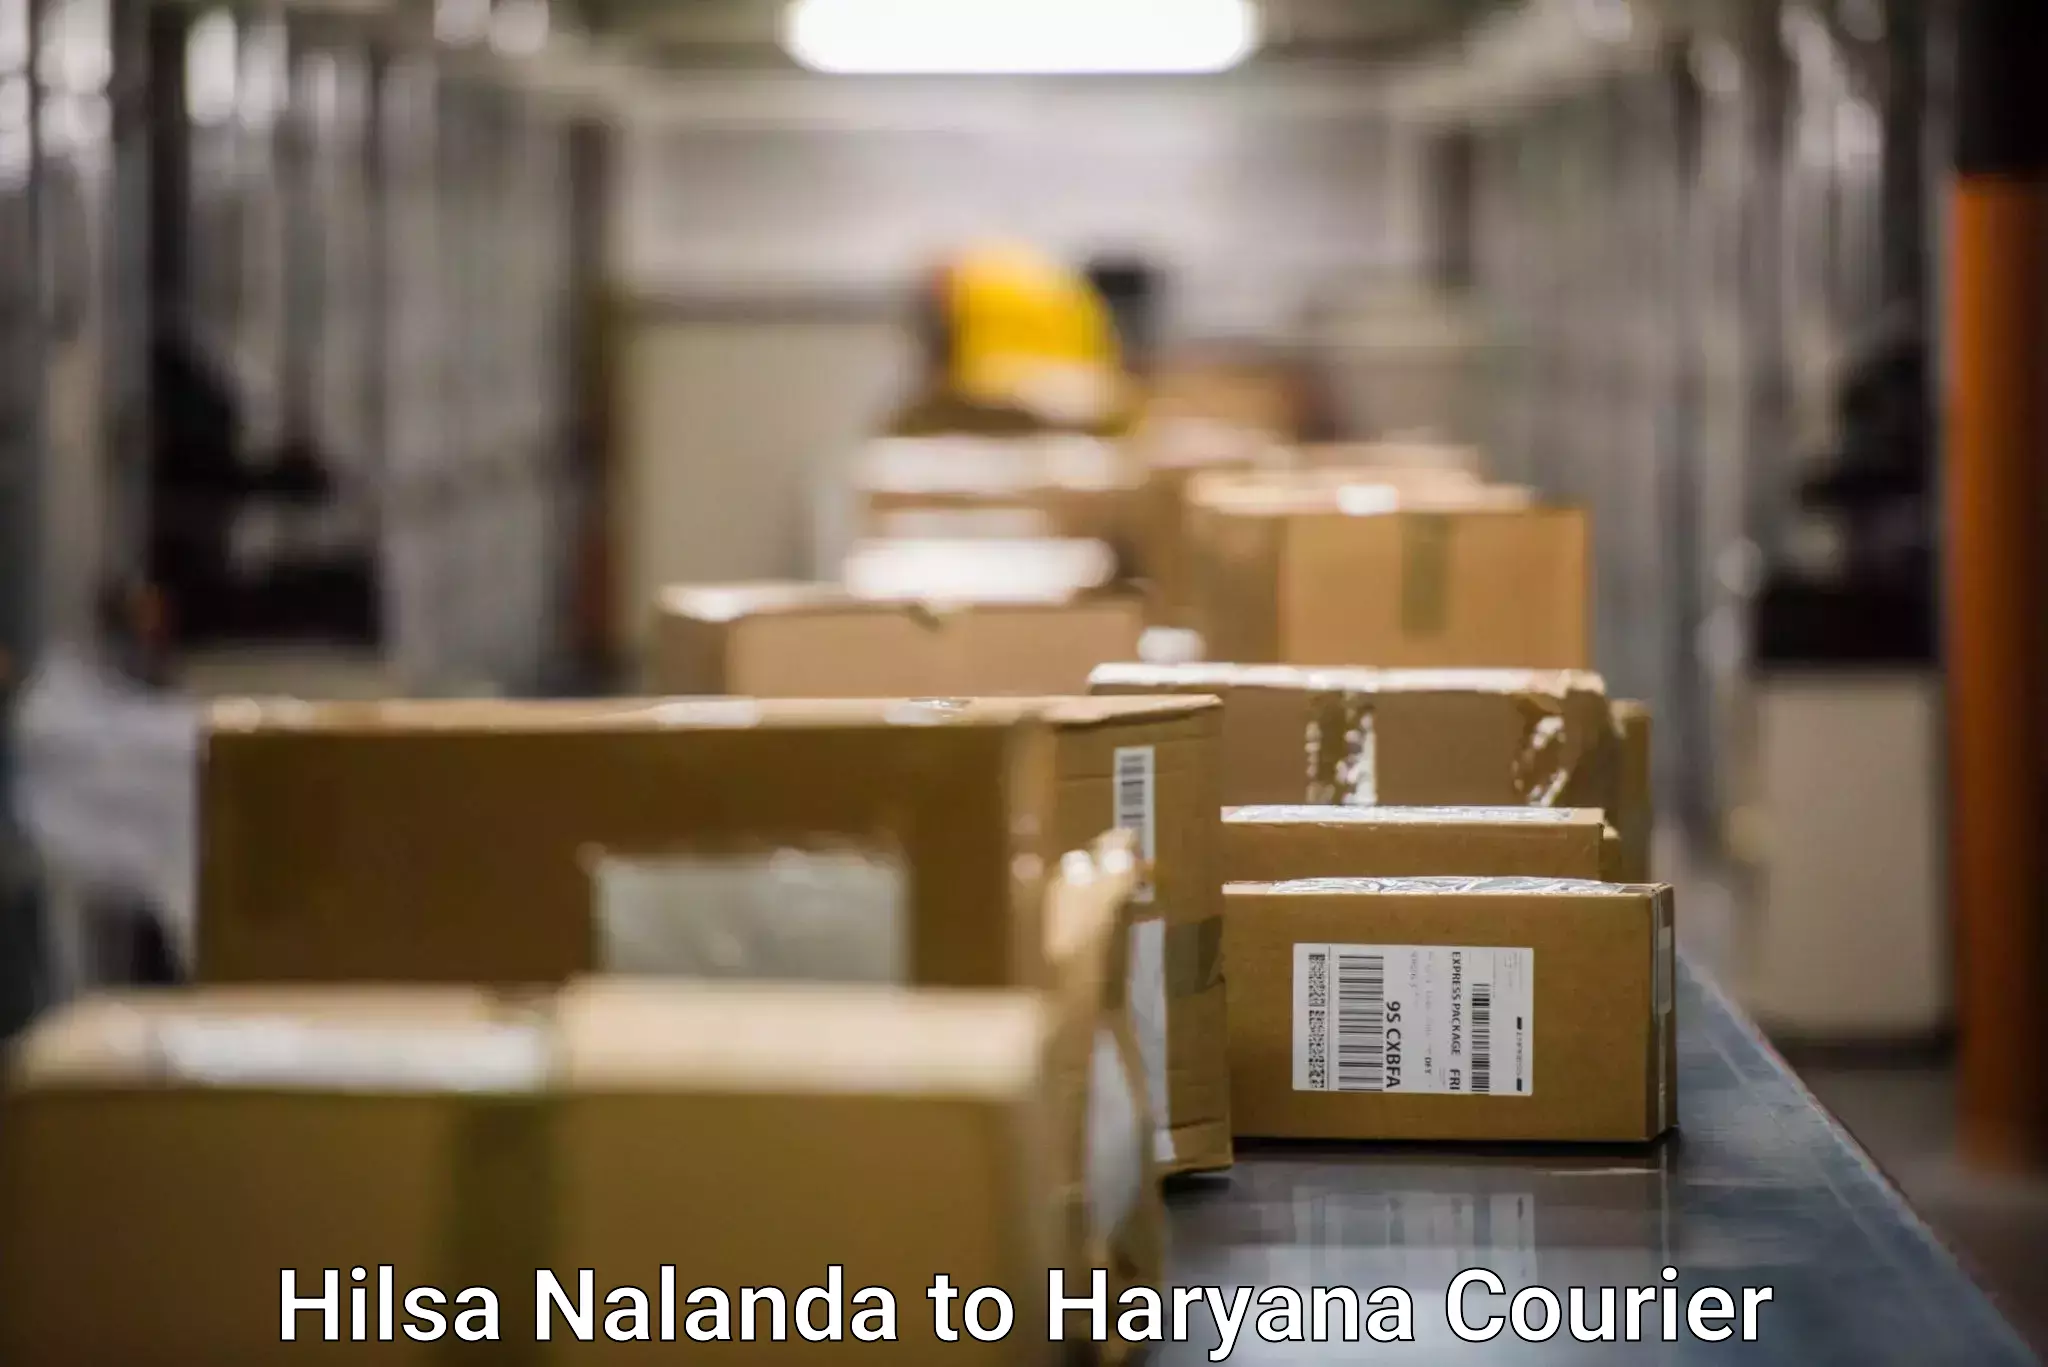 Advanced shipping services Hilsa Nalanda to Nuh